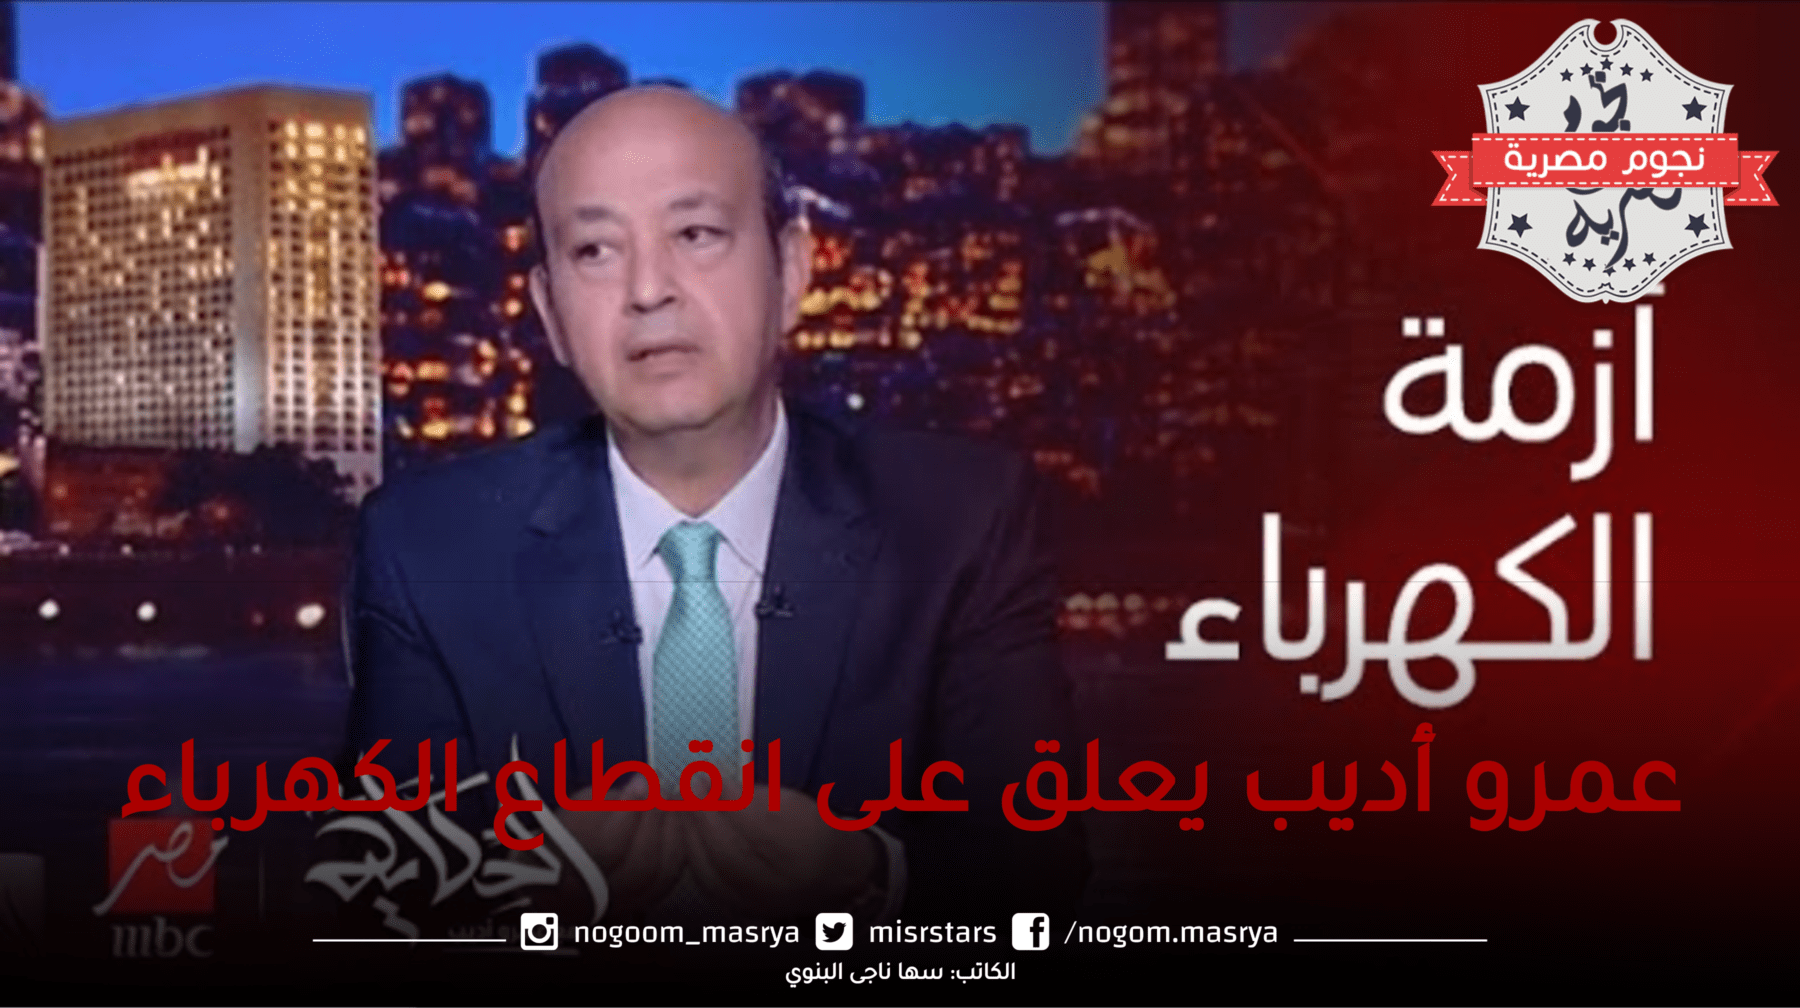 عمرو أديب يعلق على انقطاع الكهرباء